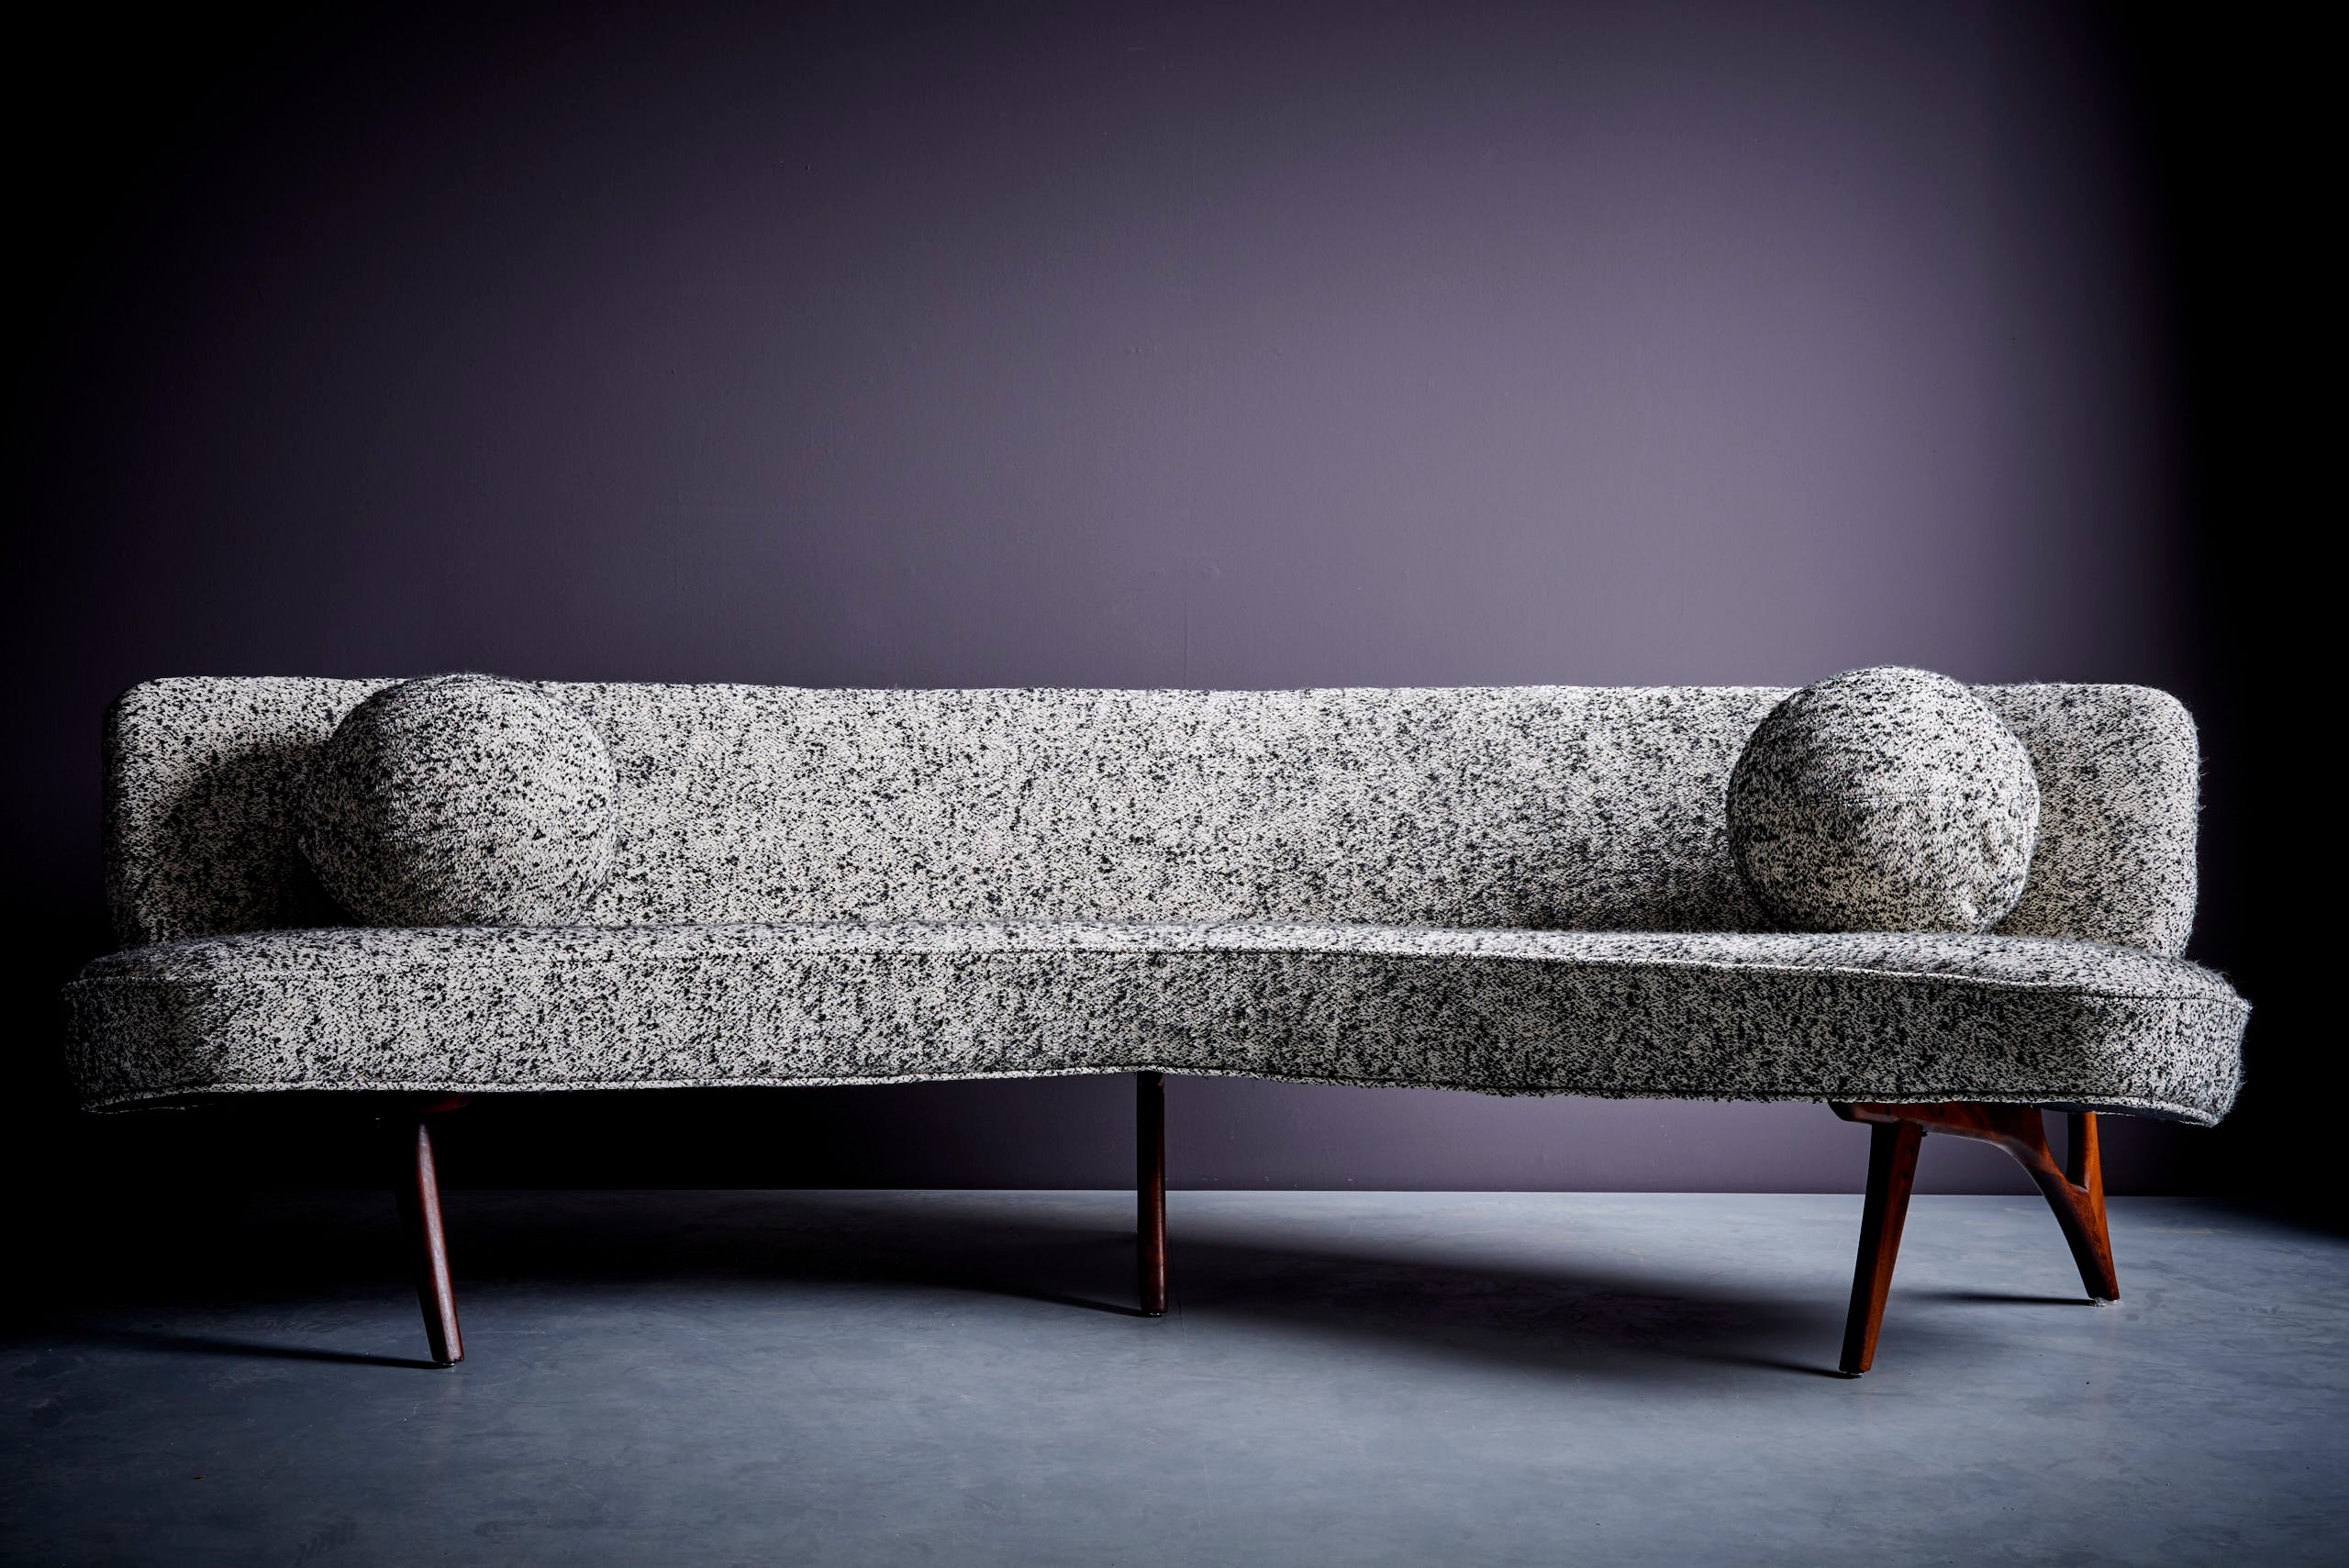 Geschwungenes Sofa aus den 1950er Jahren mit skulpturalen Beinen in der Art von Vladimir Kagan. Gekauft von den ursprünglichen Besitzern, die das Sofa in einer Villa in Hamburg, Deutschland, in einer Einrichtungsgalerie erworben haben.  Das Sofa